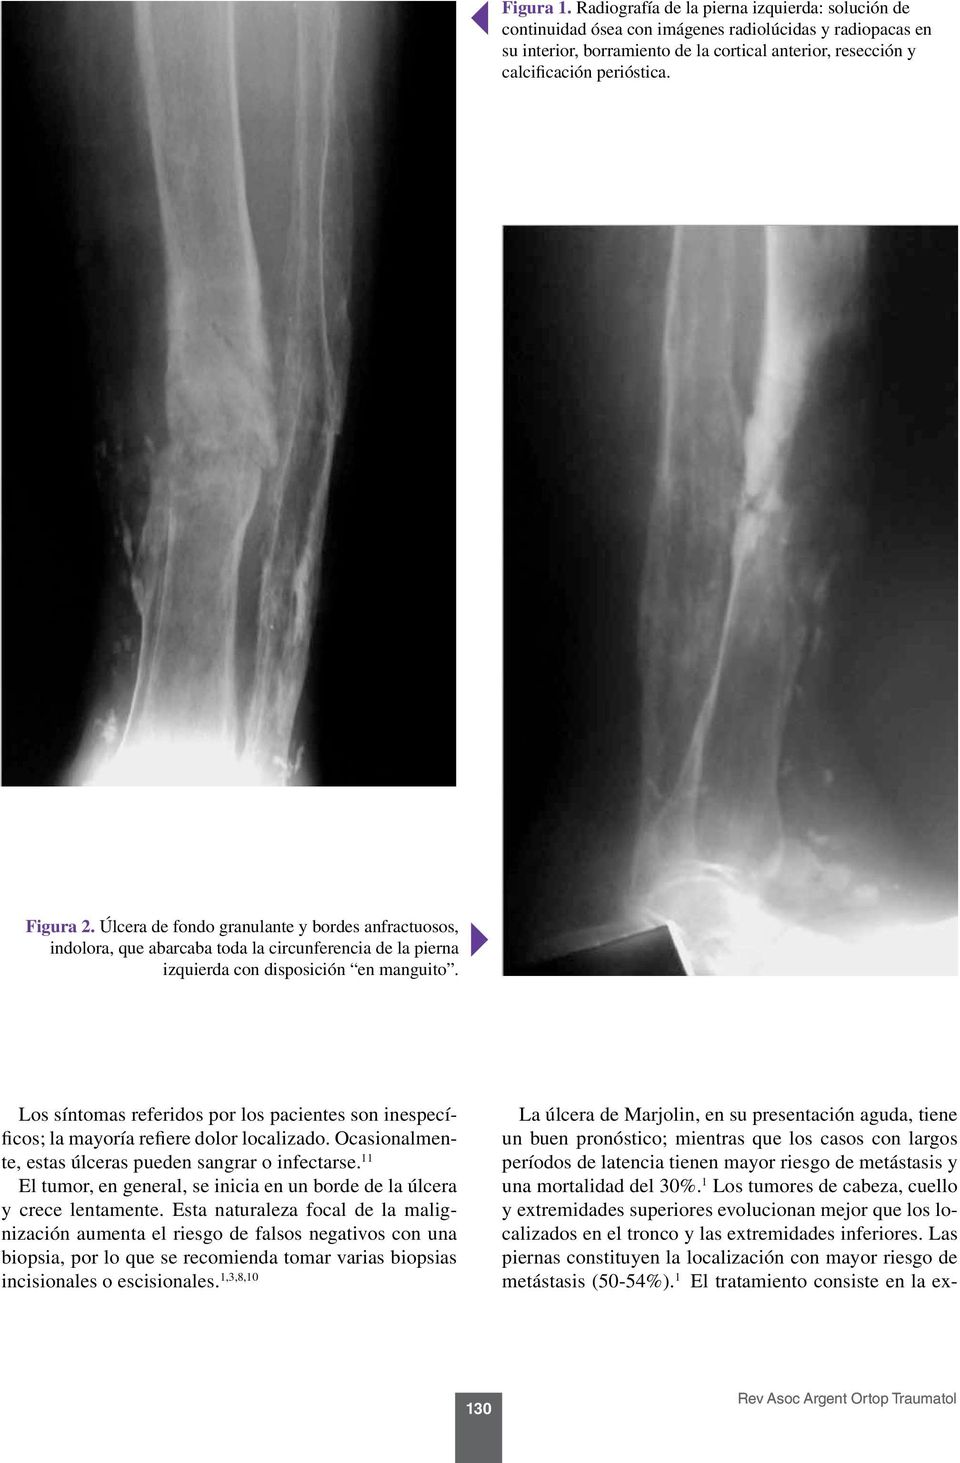 Figura 2. Úlcera de fondo granulante y bordes anfractuosos, indolora, que abarcaba toda la circunferencia de la pierna izquierda con disposición en manguito.